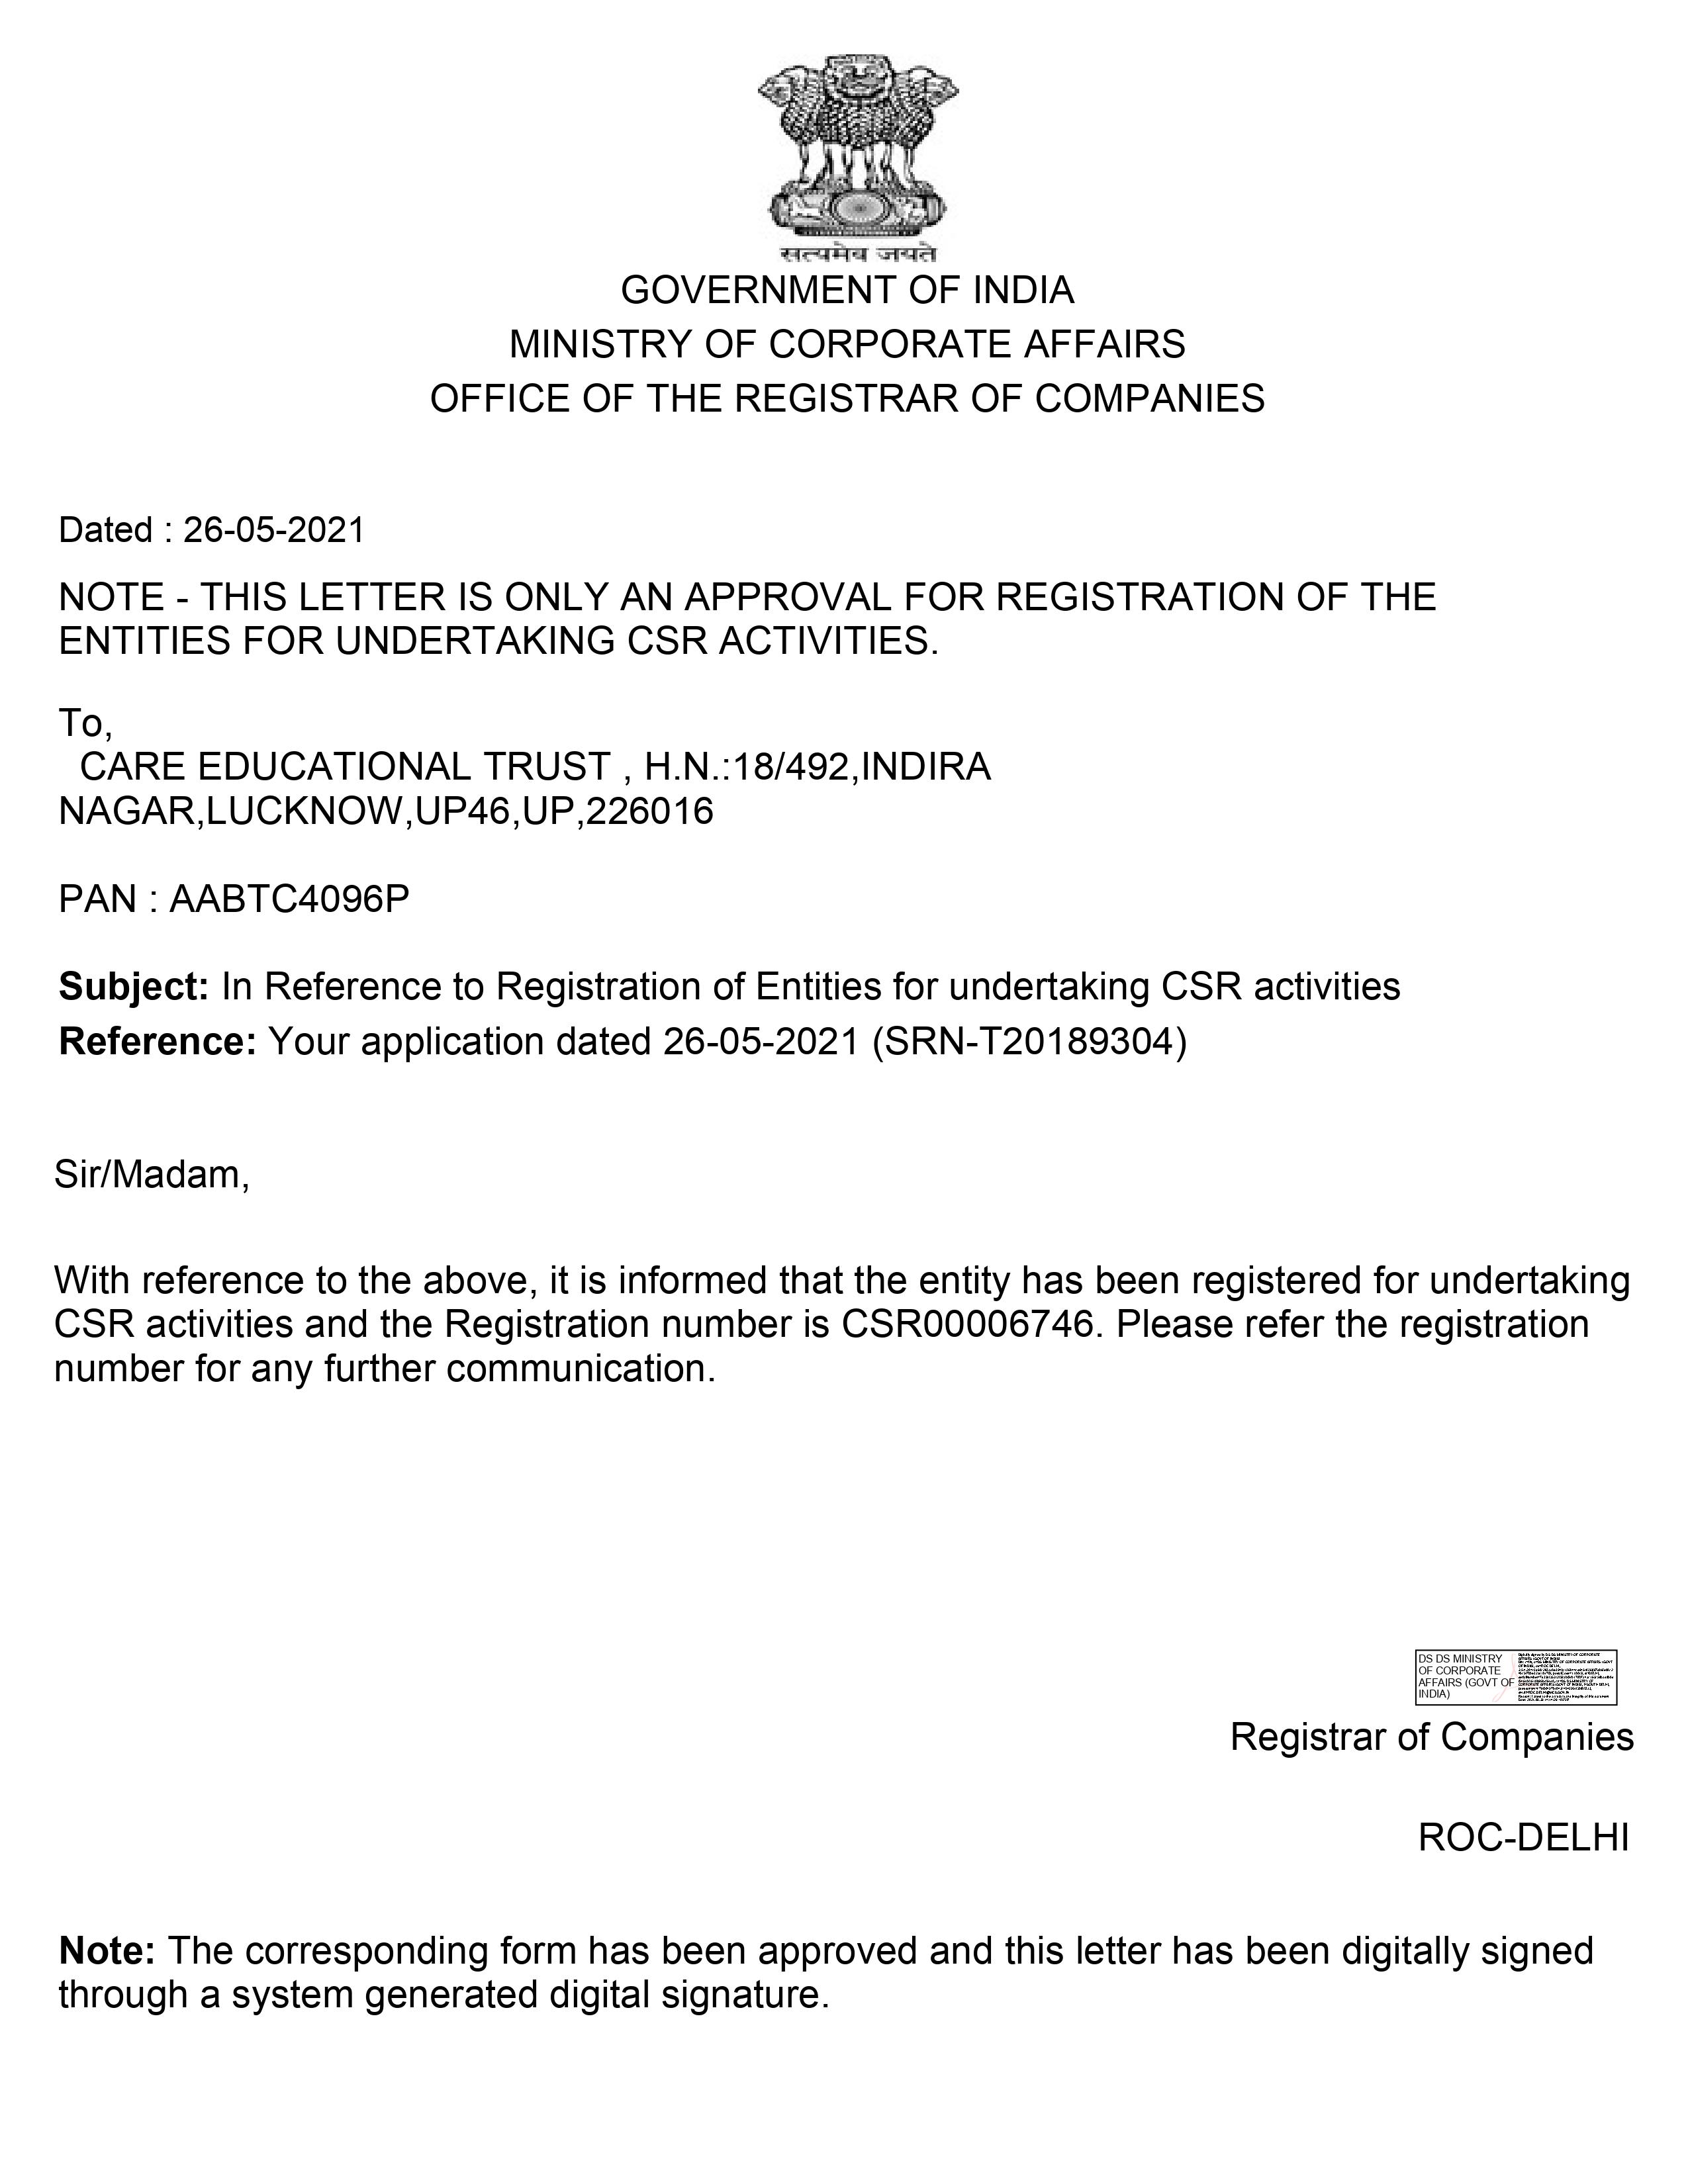 Approval Letter for form CSR1